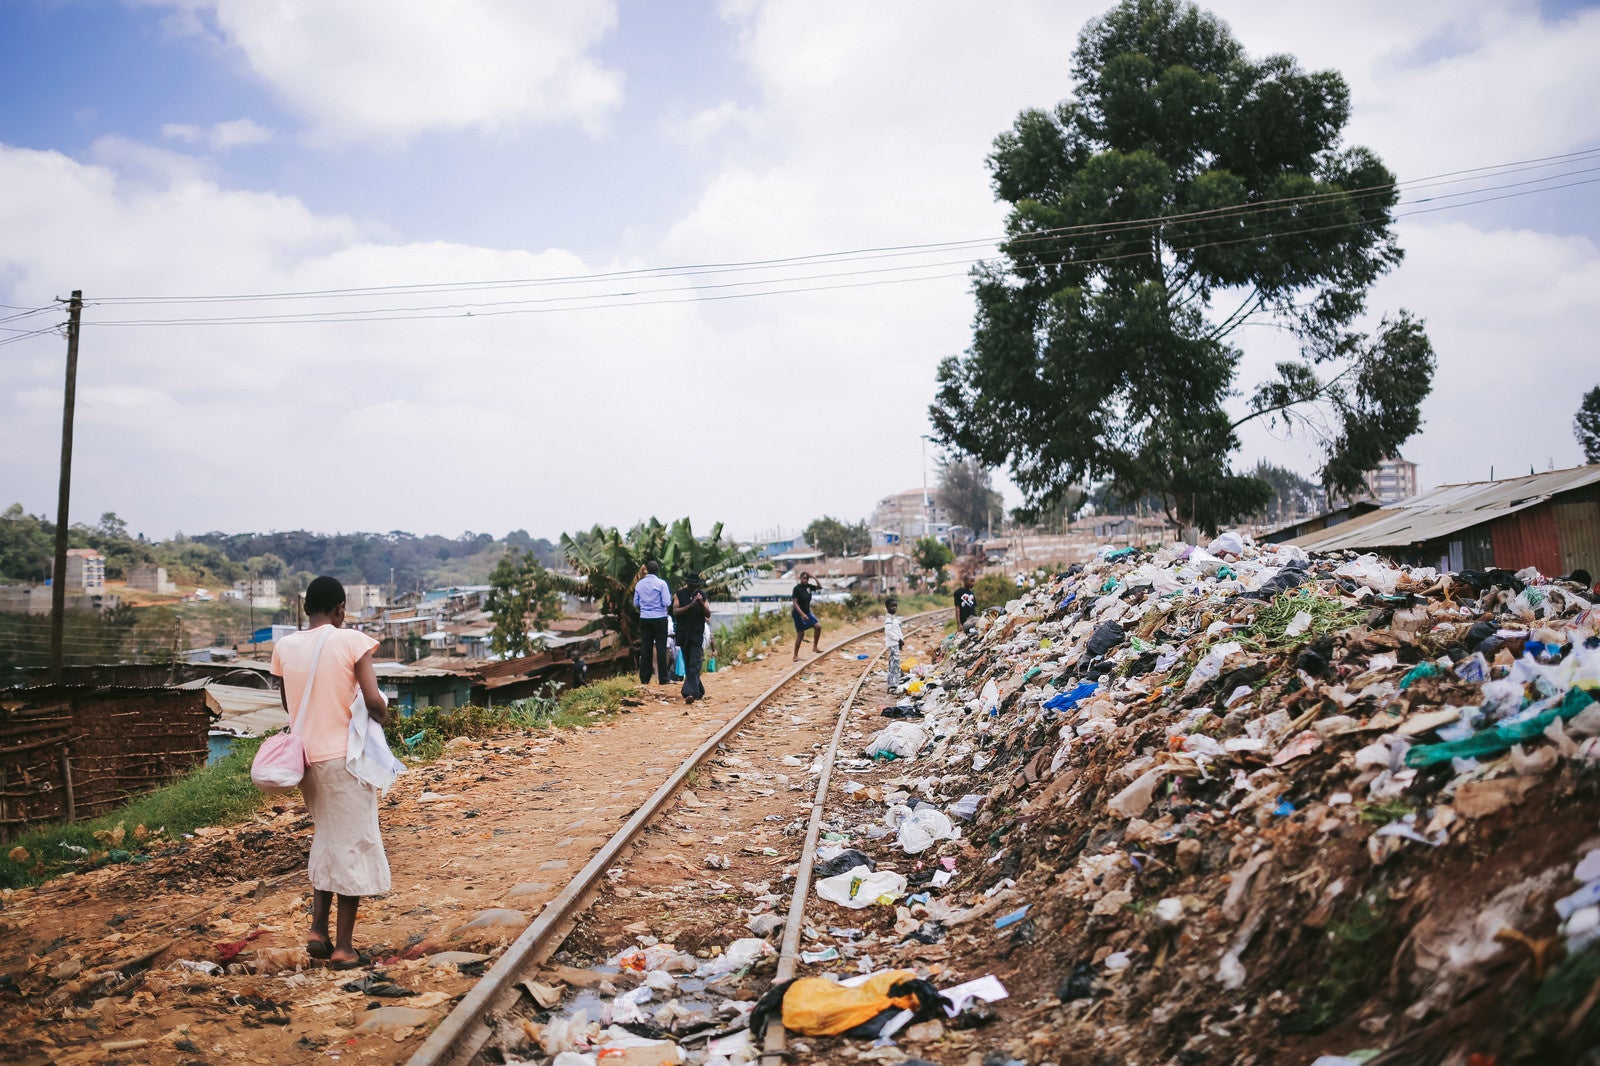 「ゴミが散乱するケニアのスラム街」の写真